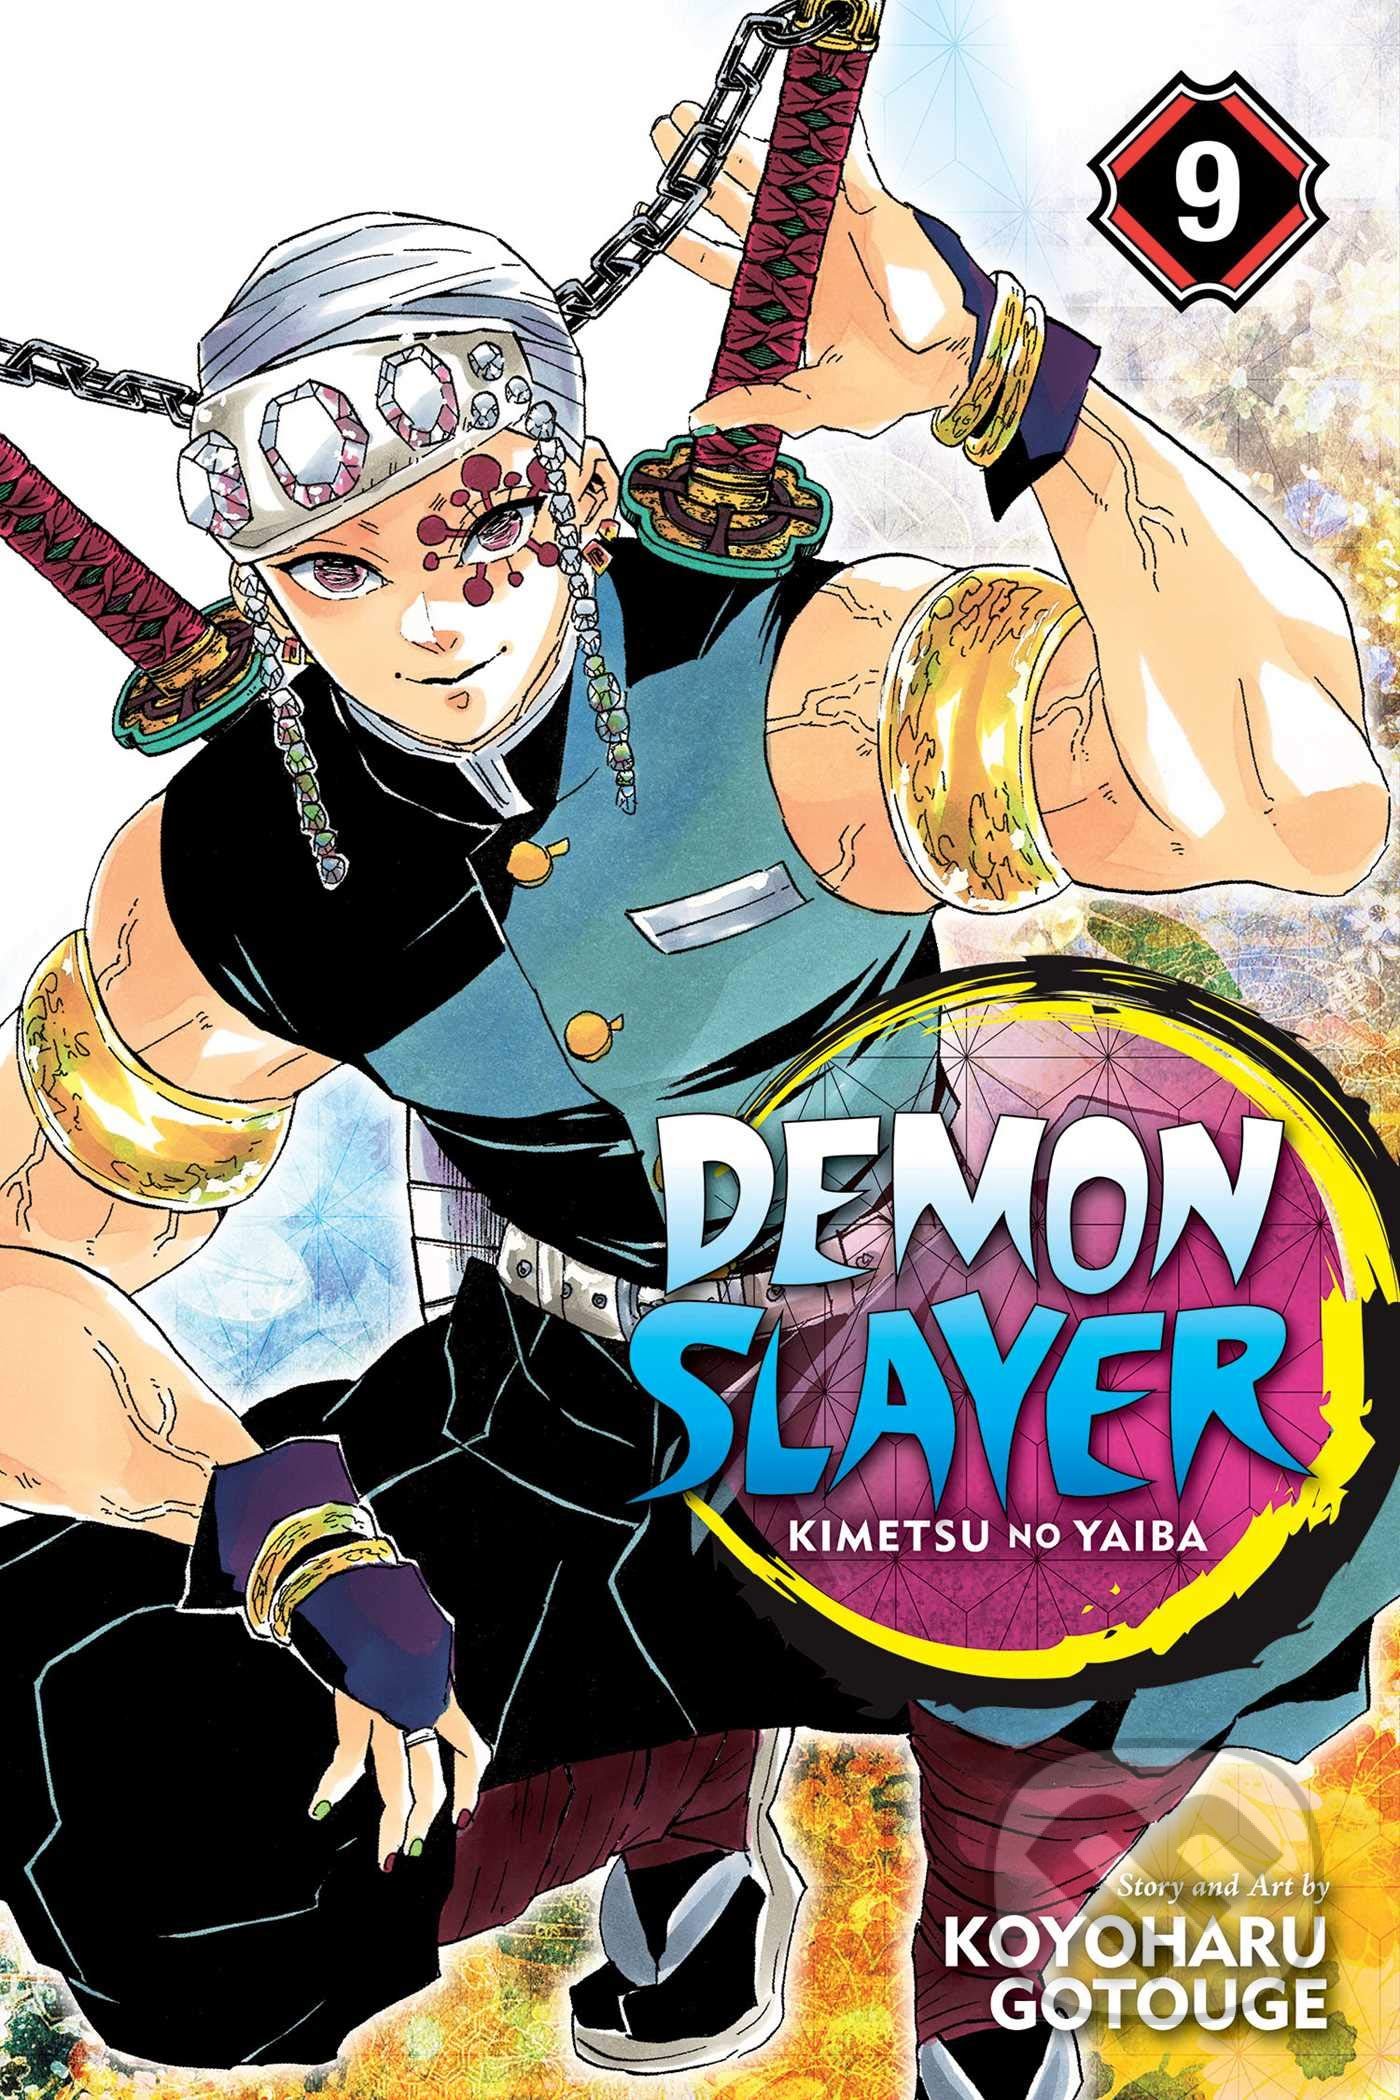 Demon Slayer: Kimetsu no Yaiba (Volume 9) - Koyoharu Gotouge